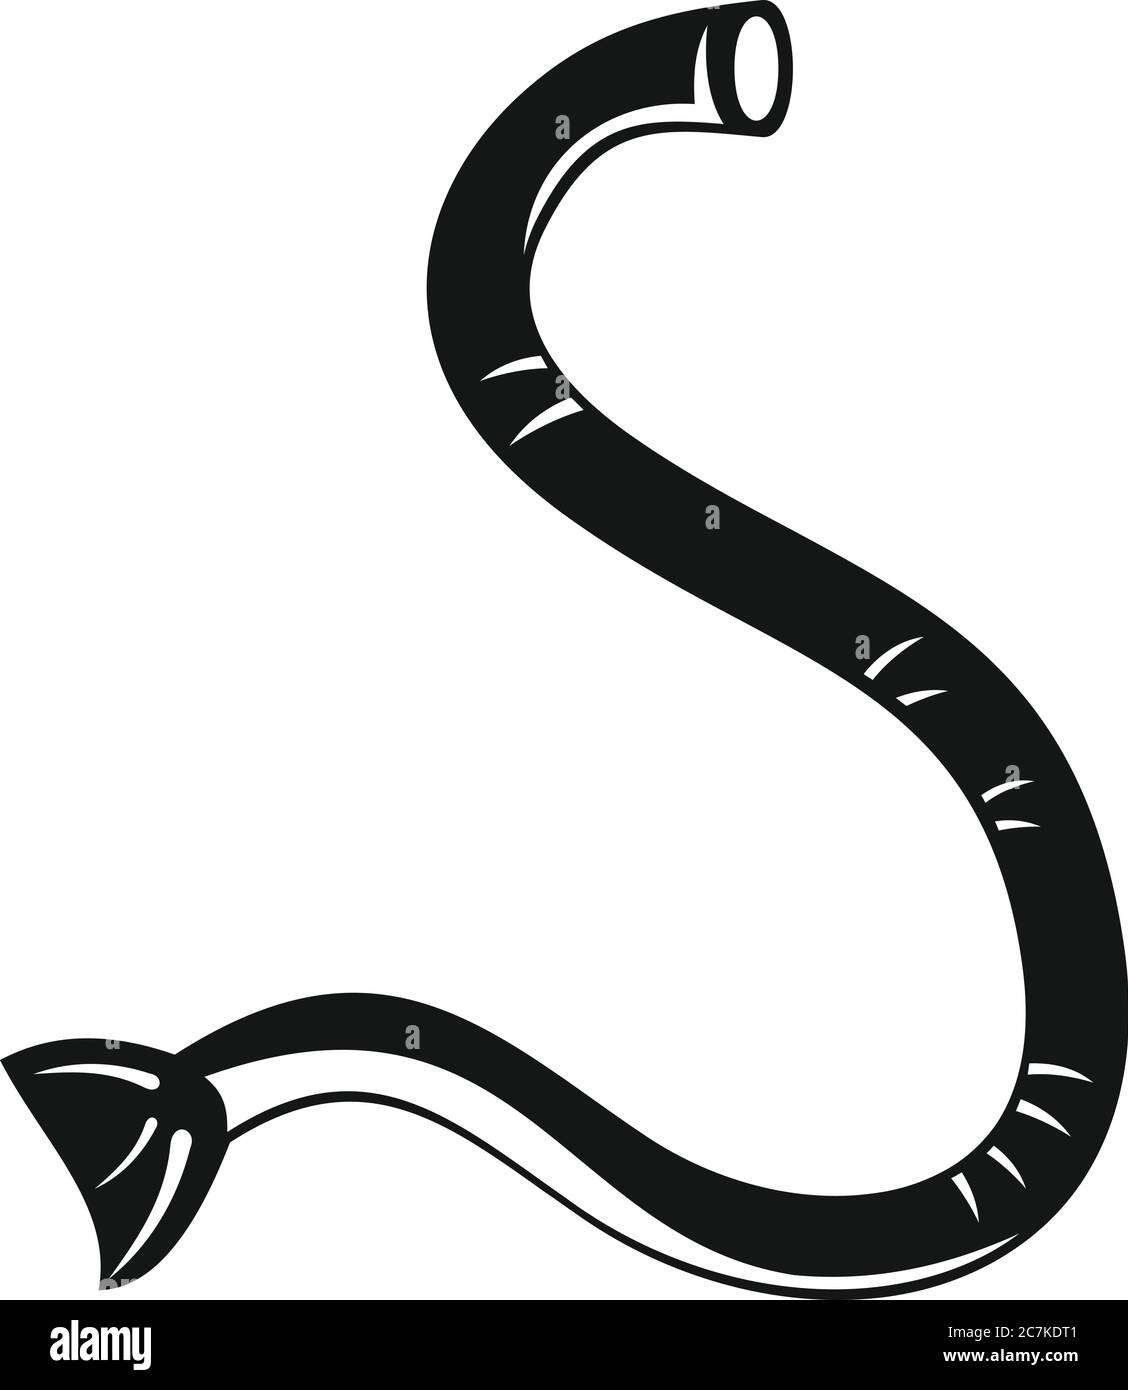 Icône de ver parasite. Illustration simple de l'icône vecteur de ver parasite pour la conception de sites Web isolée sur fond blanc Illustration de Vecteur